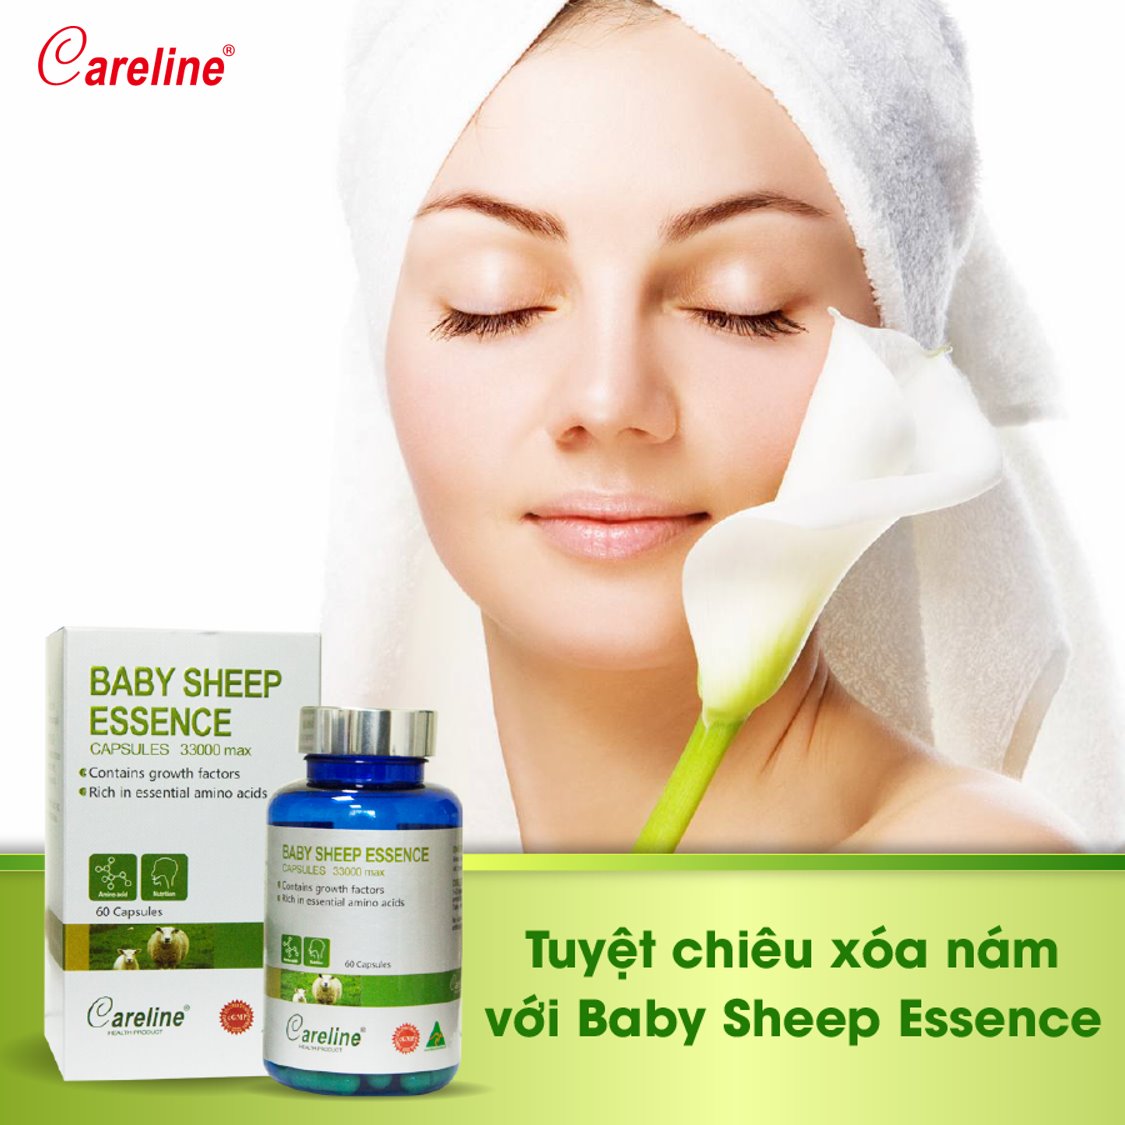 Viên uống nhau thai cừu Careline Baby Sheep Essence 33000mg giúp đẹp da và tăng cường nội tiết tố nữ